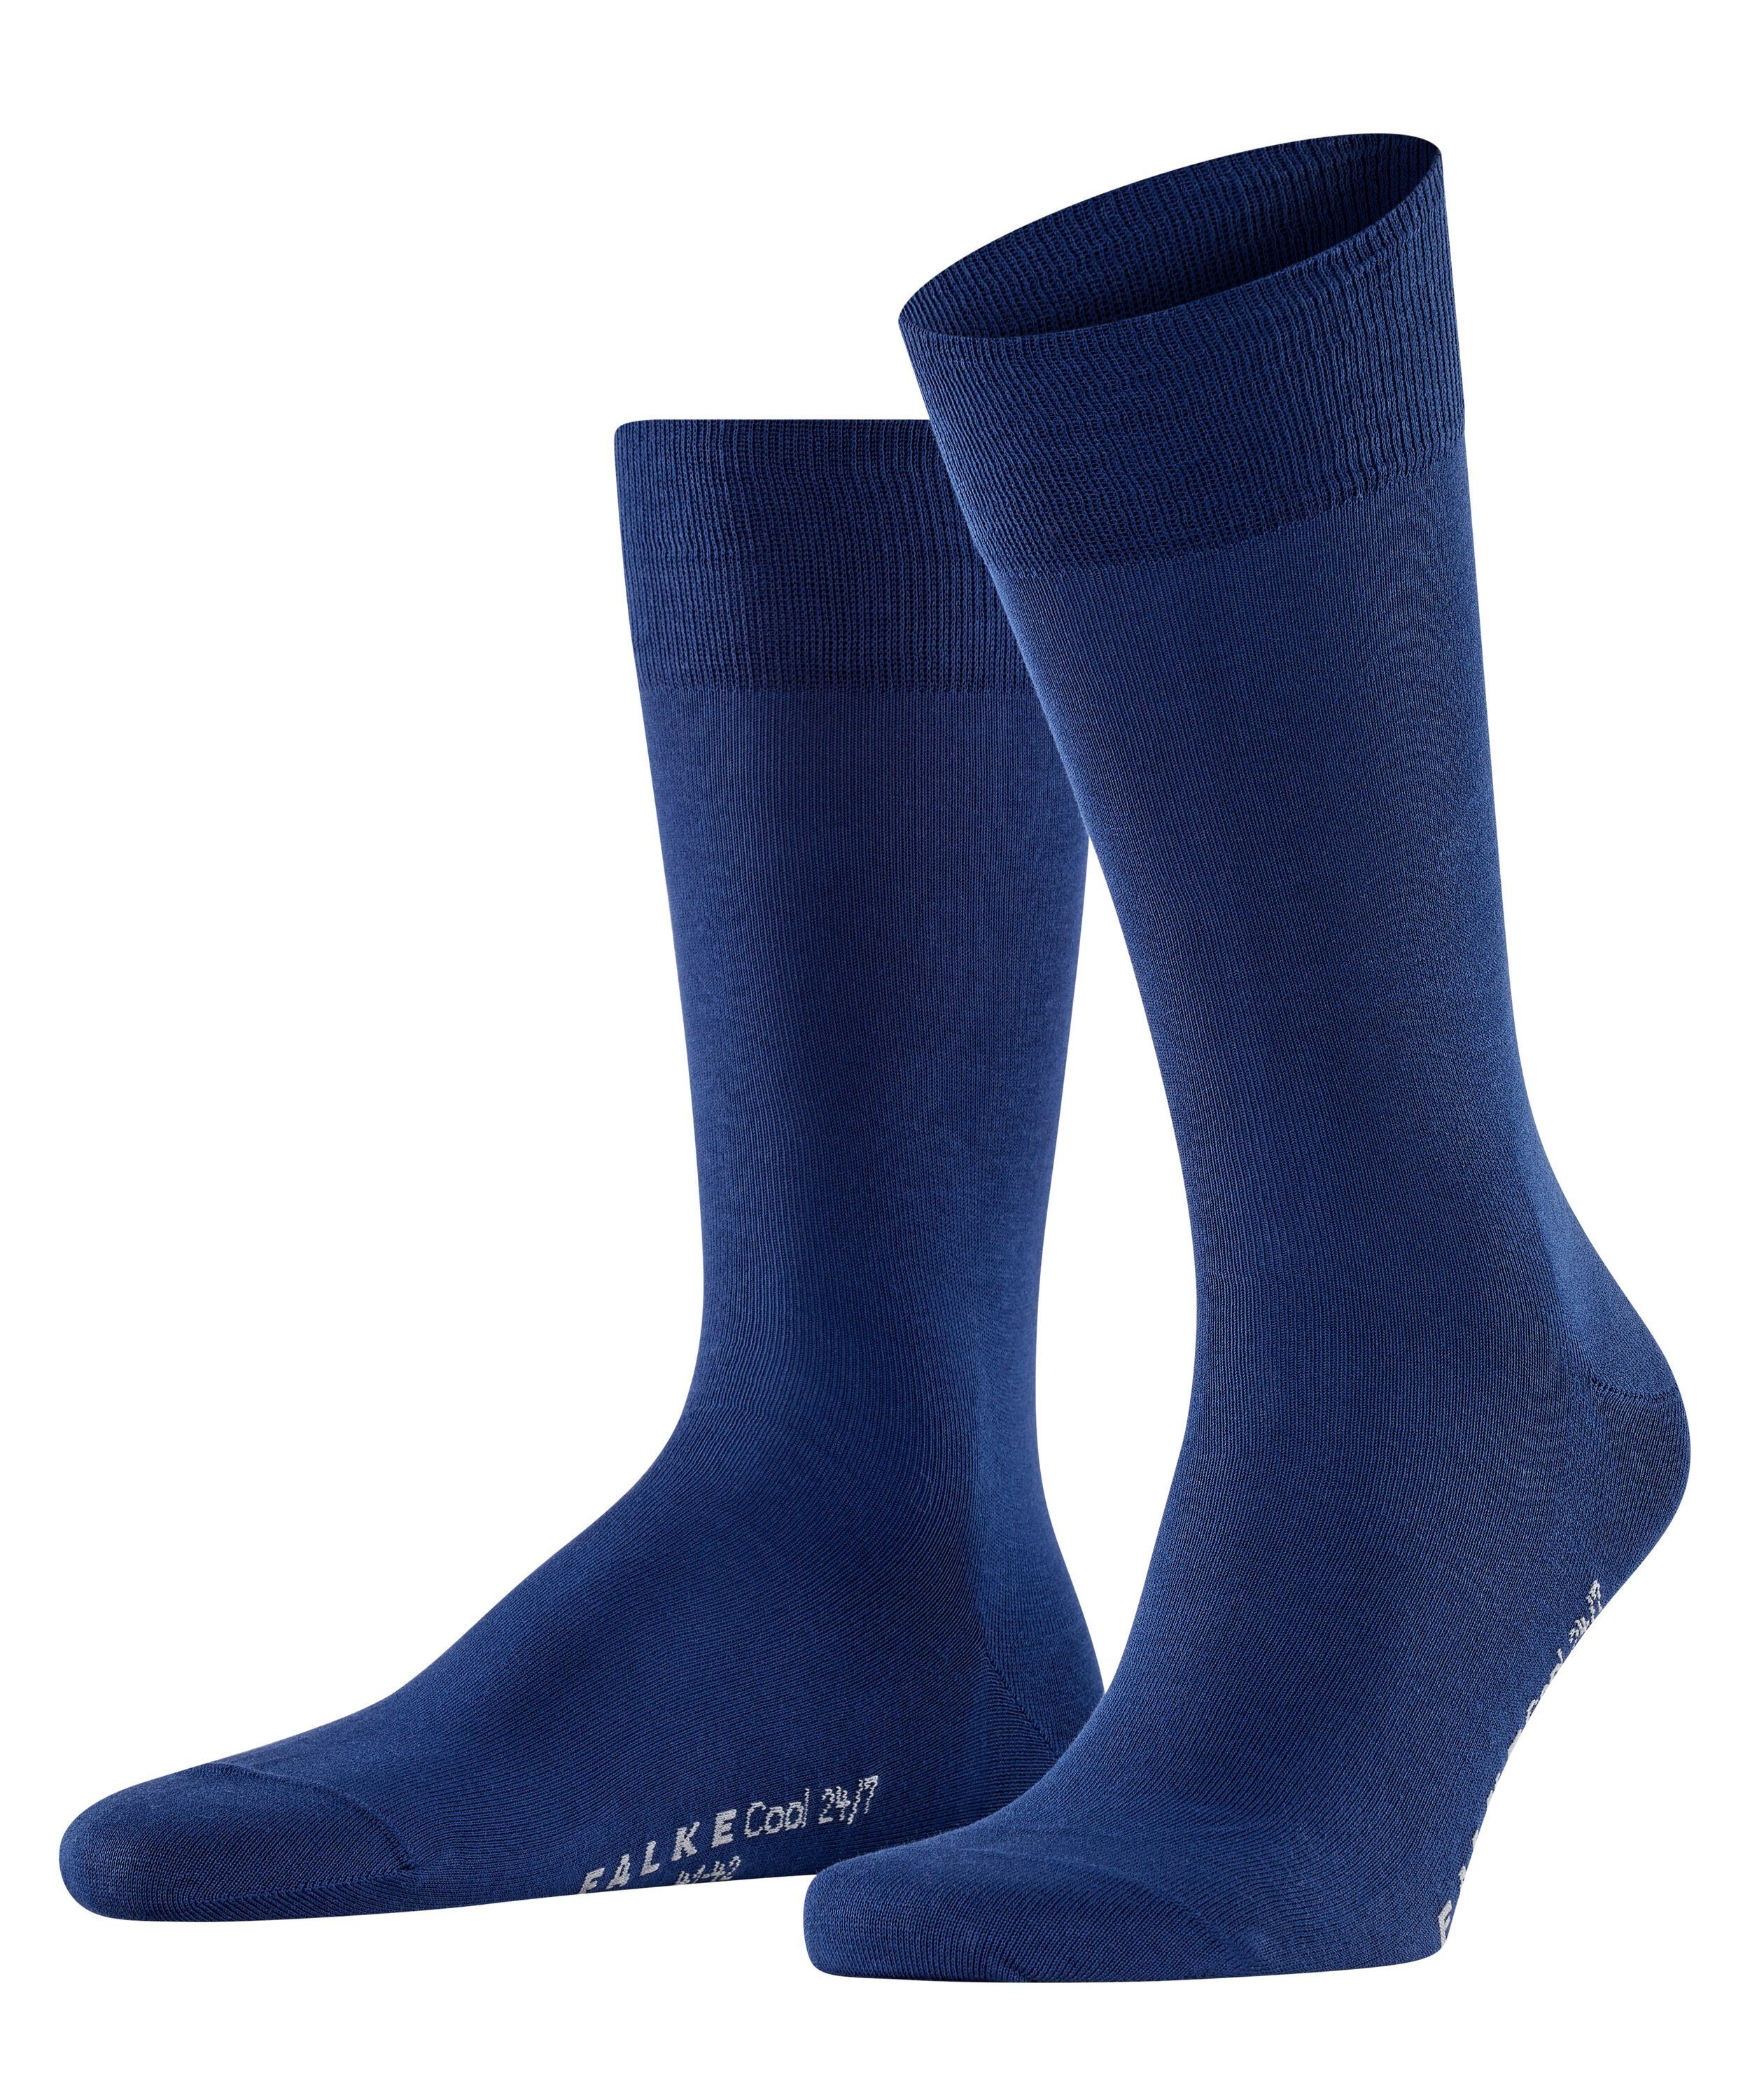 FALKE Socken Cool 24/7 (1-Paar) royal blue (6000) | Socken